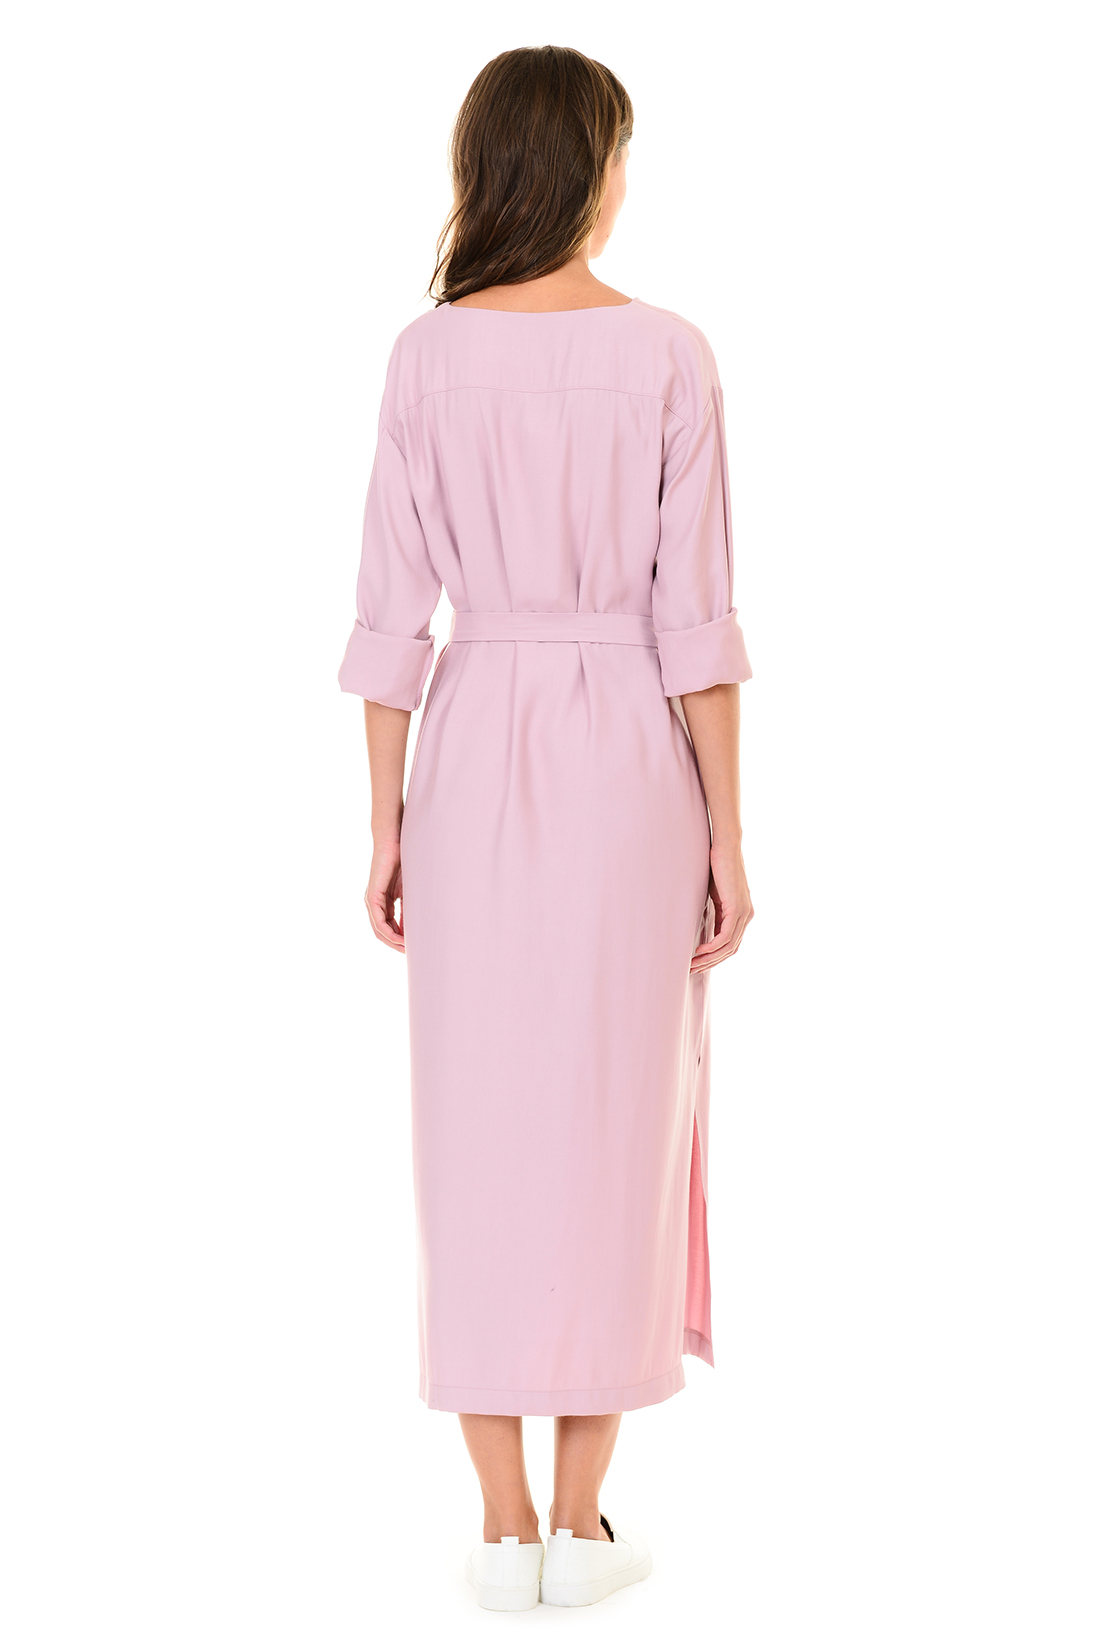 Платье с запахом (арт. baon B457106), размер S, цвет розовый Платье с запахом (арт. baon B457106) - фото 2